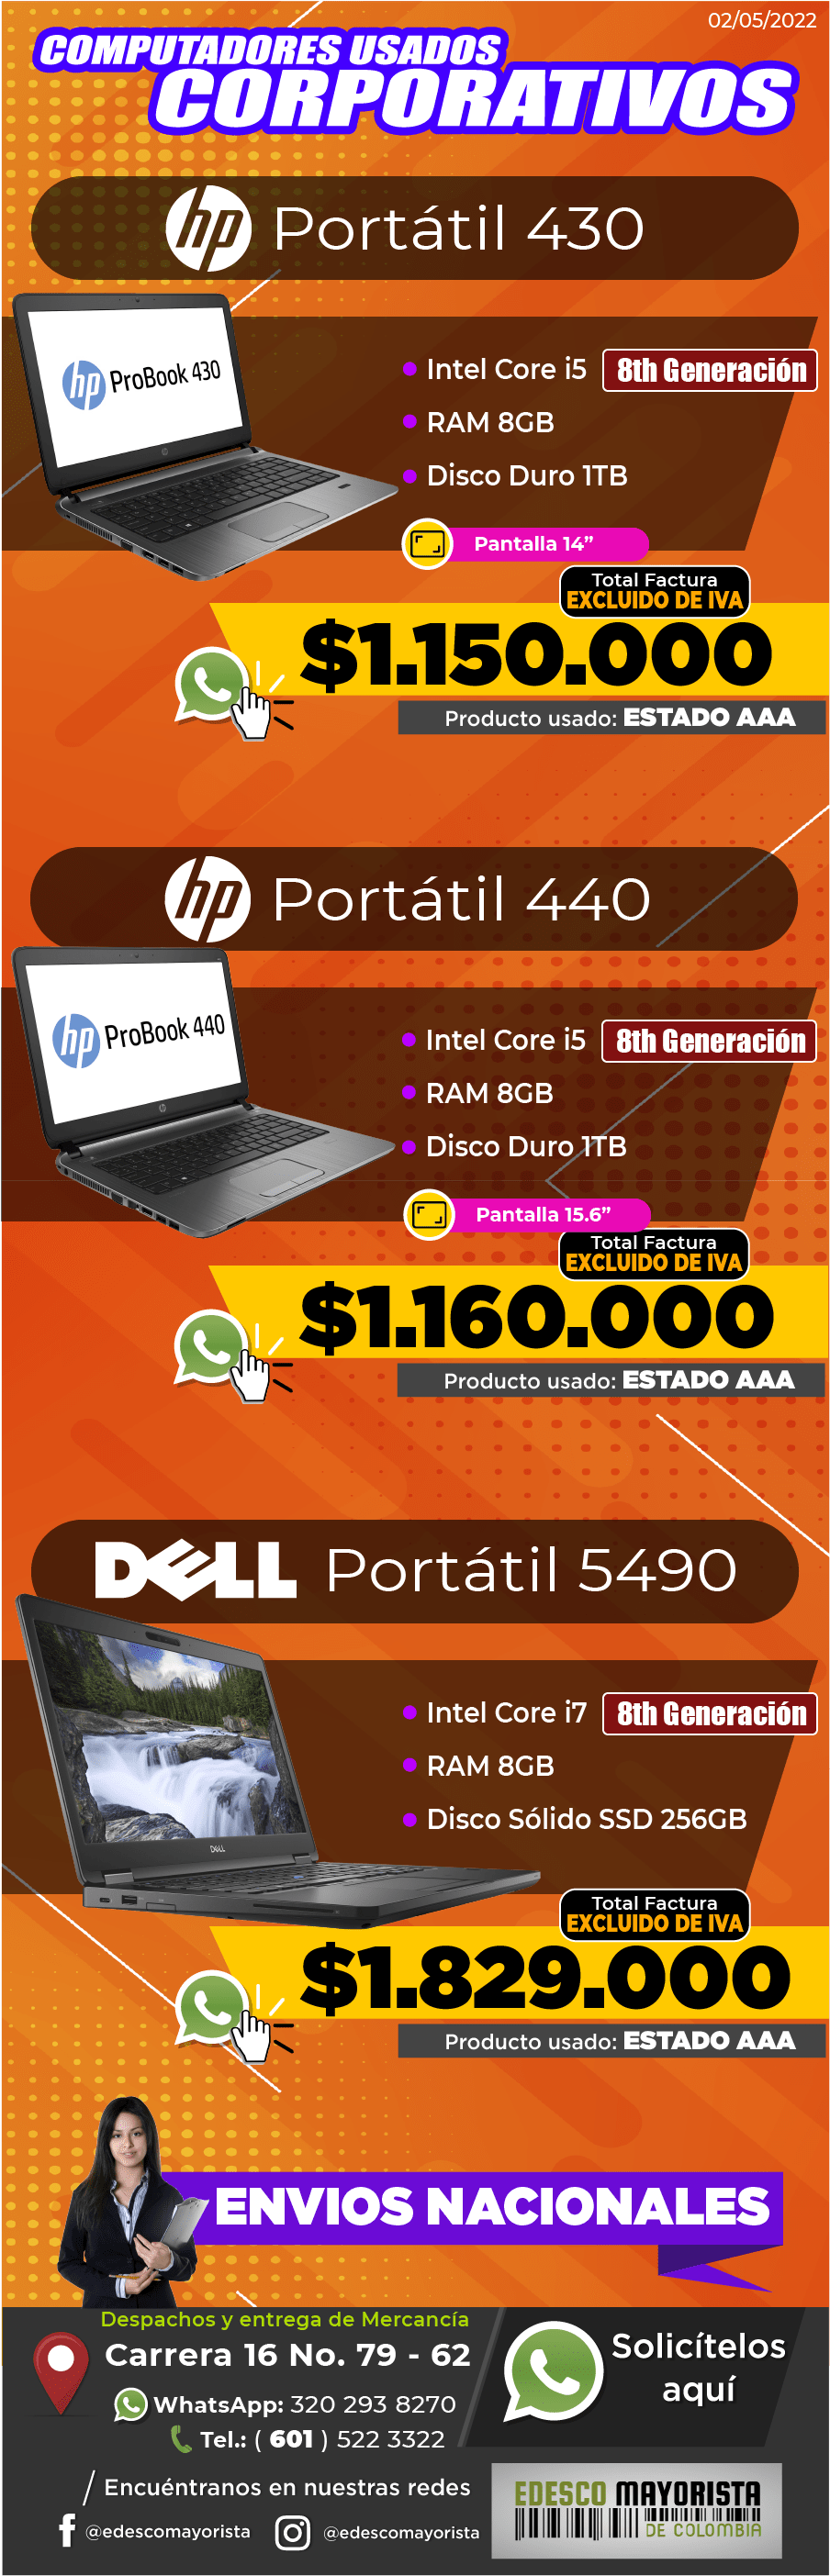 Portátil HP 430 / 440 / DELL 5490